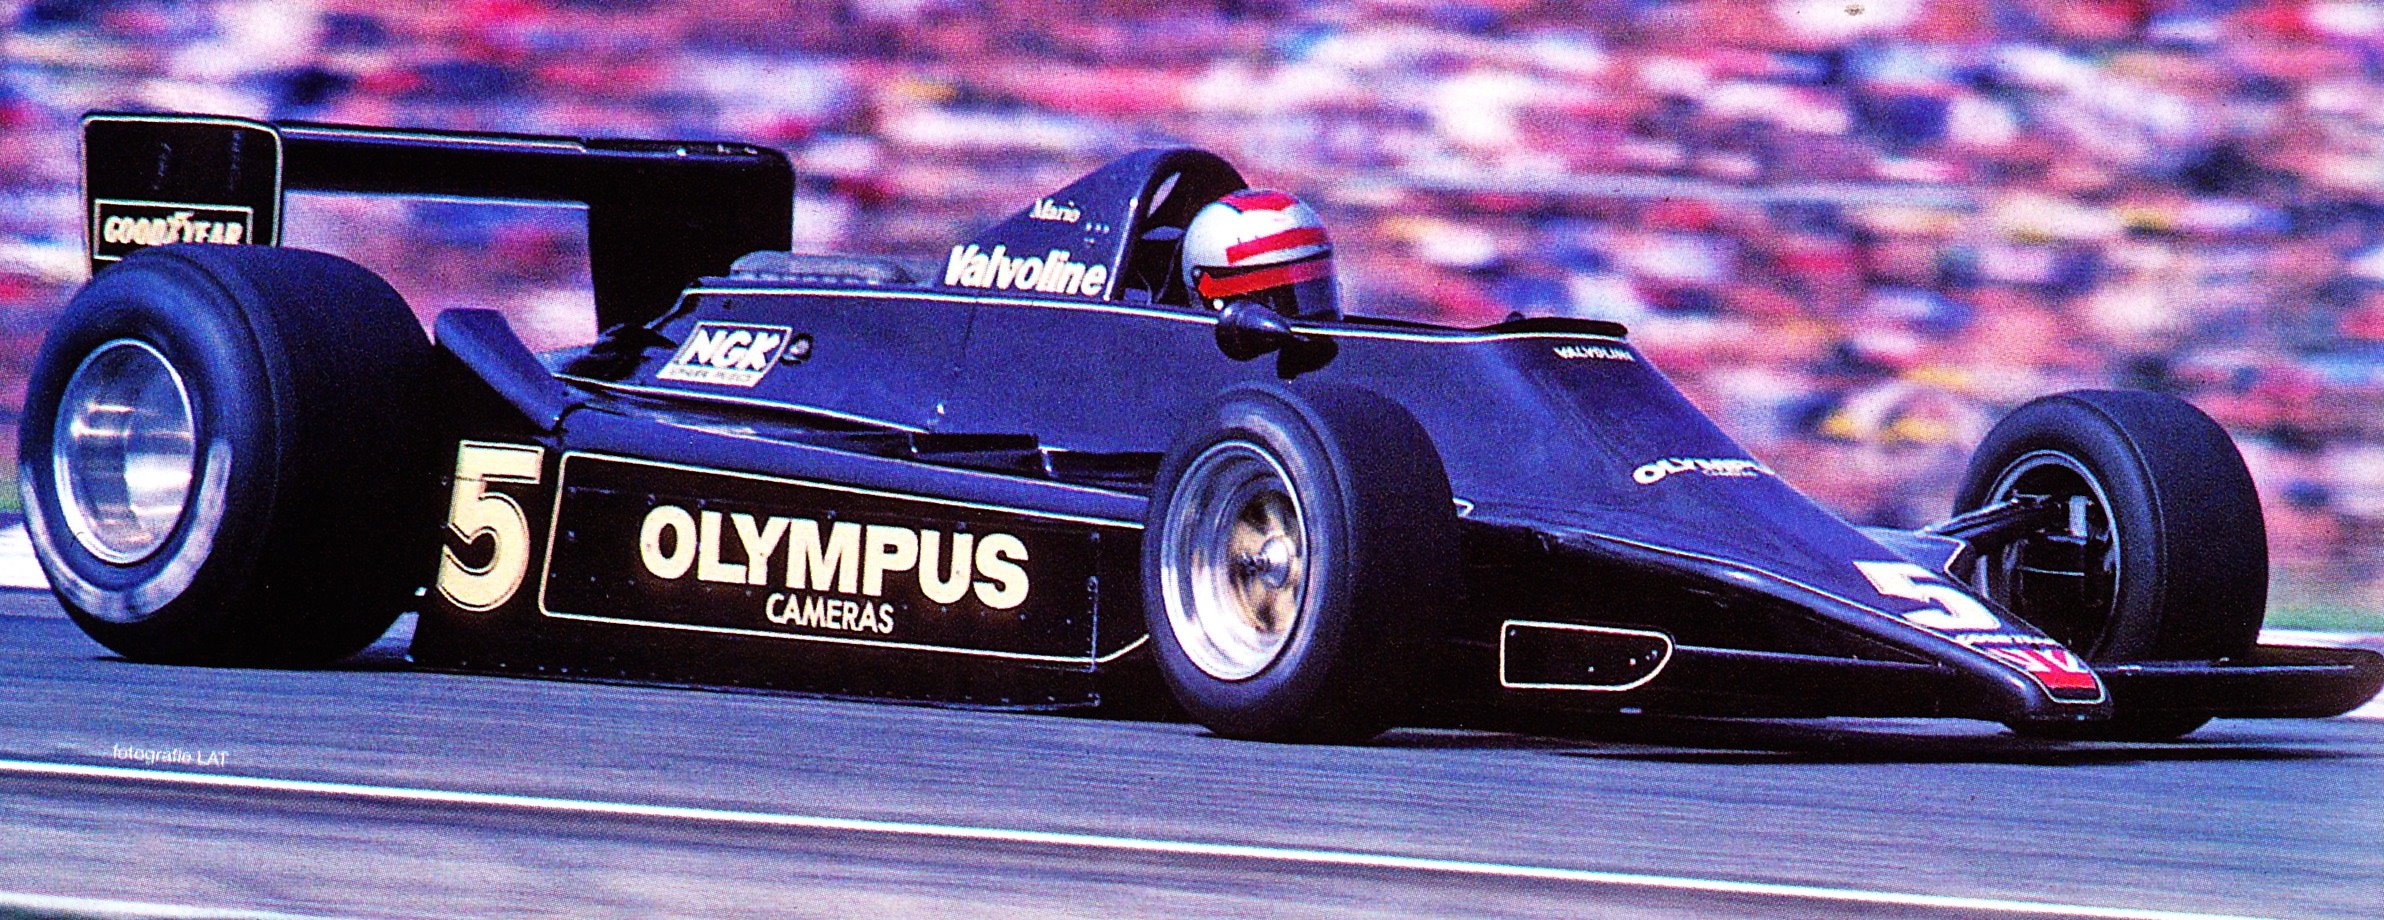 1978 - Lotus 79